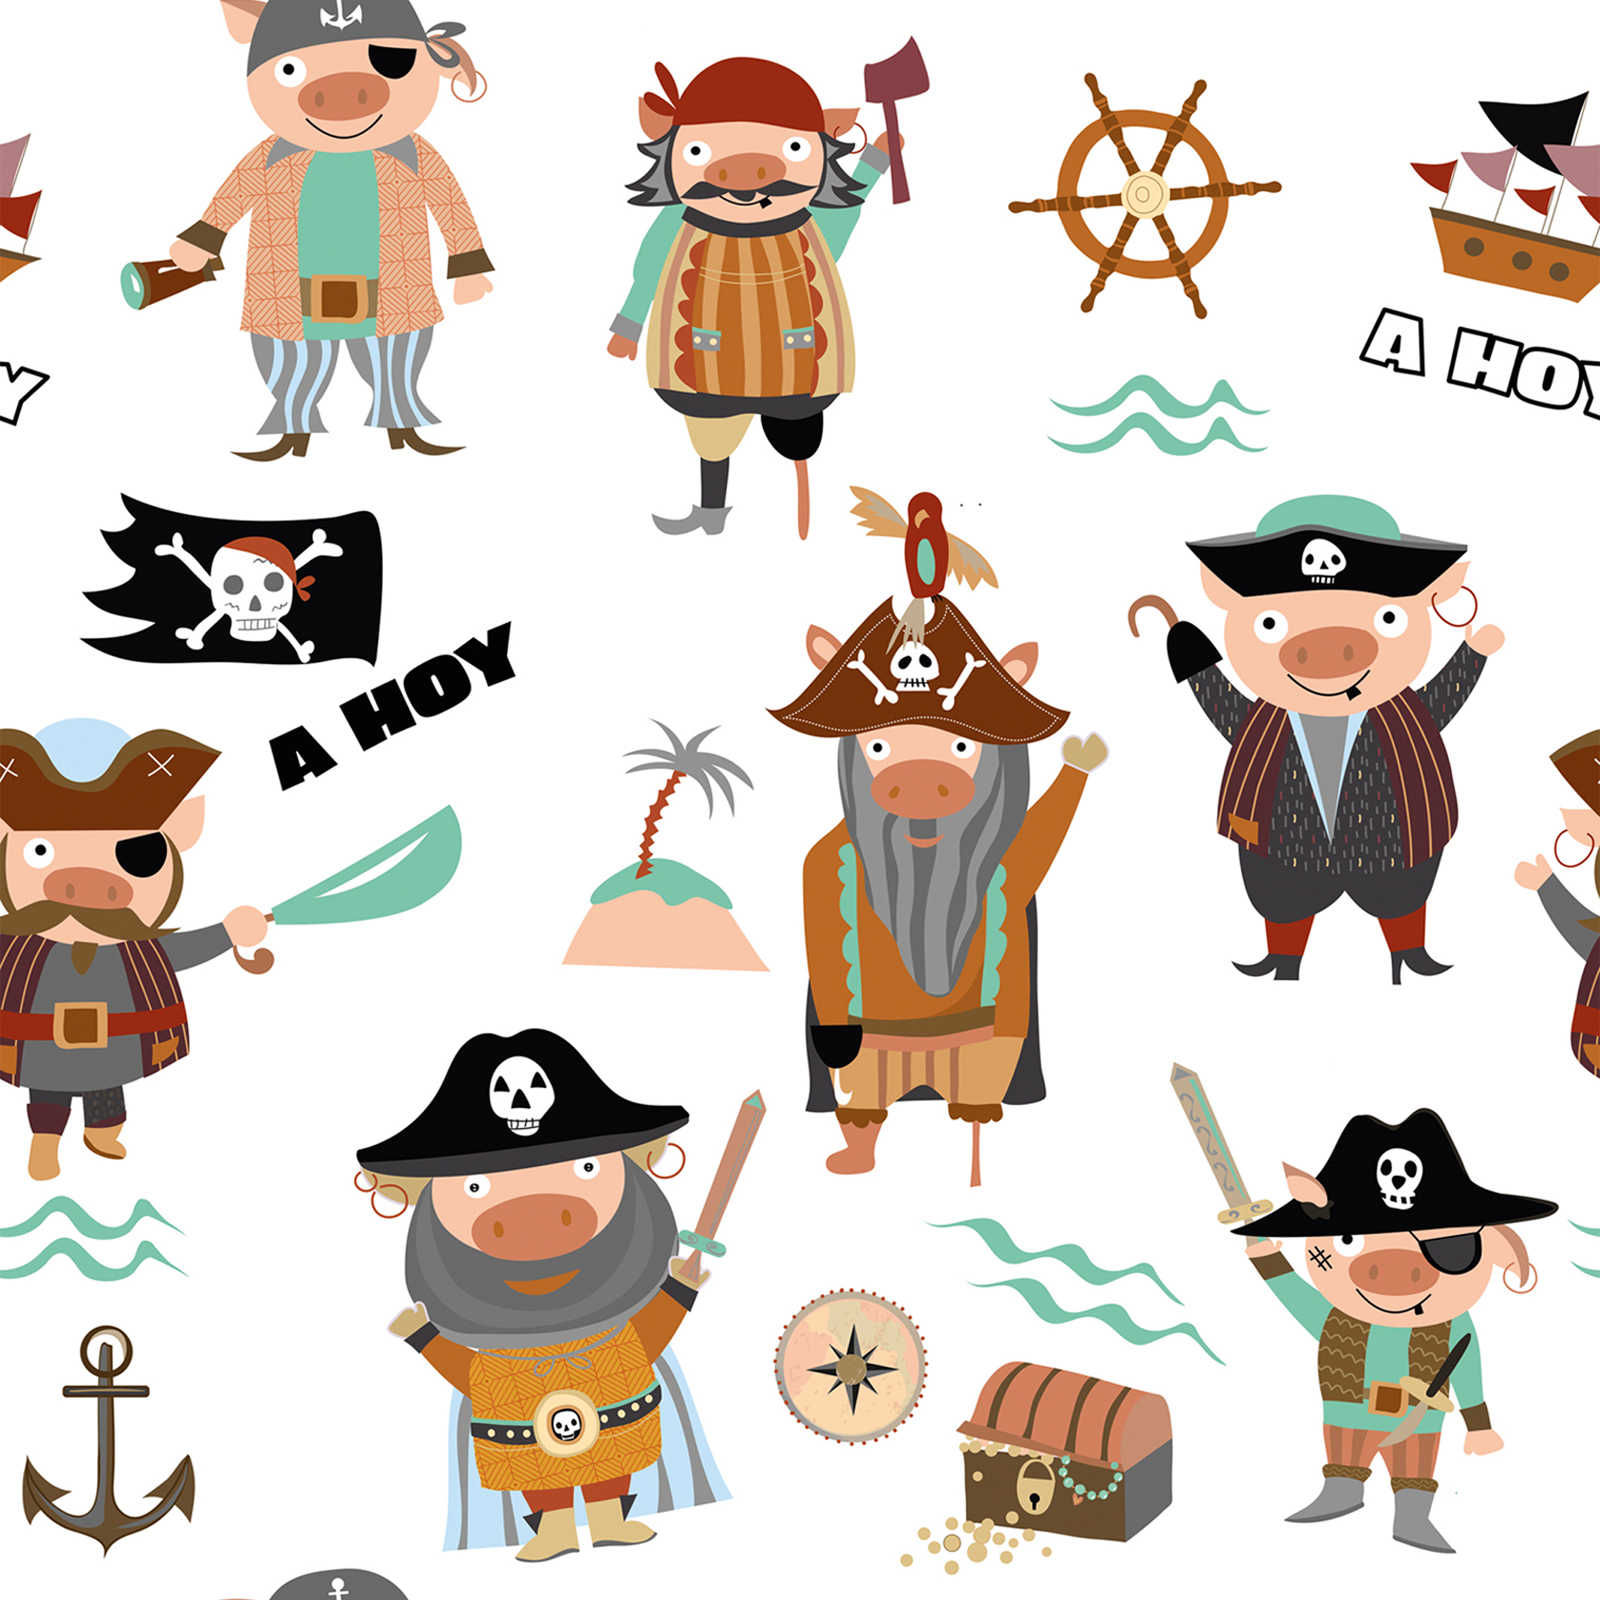 Kinderbehang met verschillende piraten en symbolen - kleurrijk, crème, bruin
